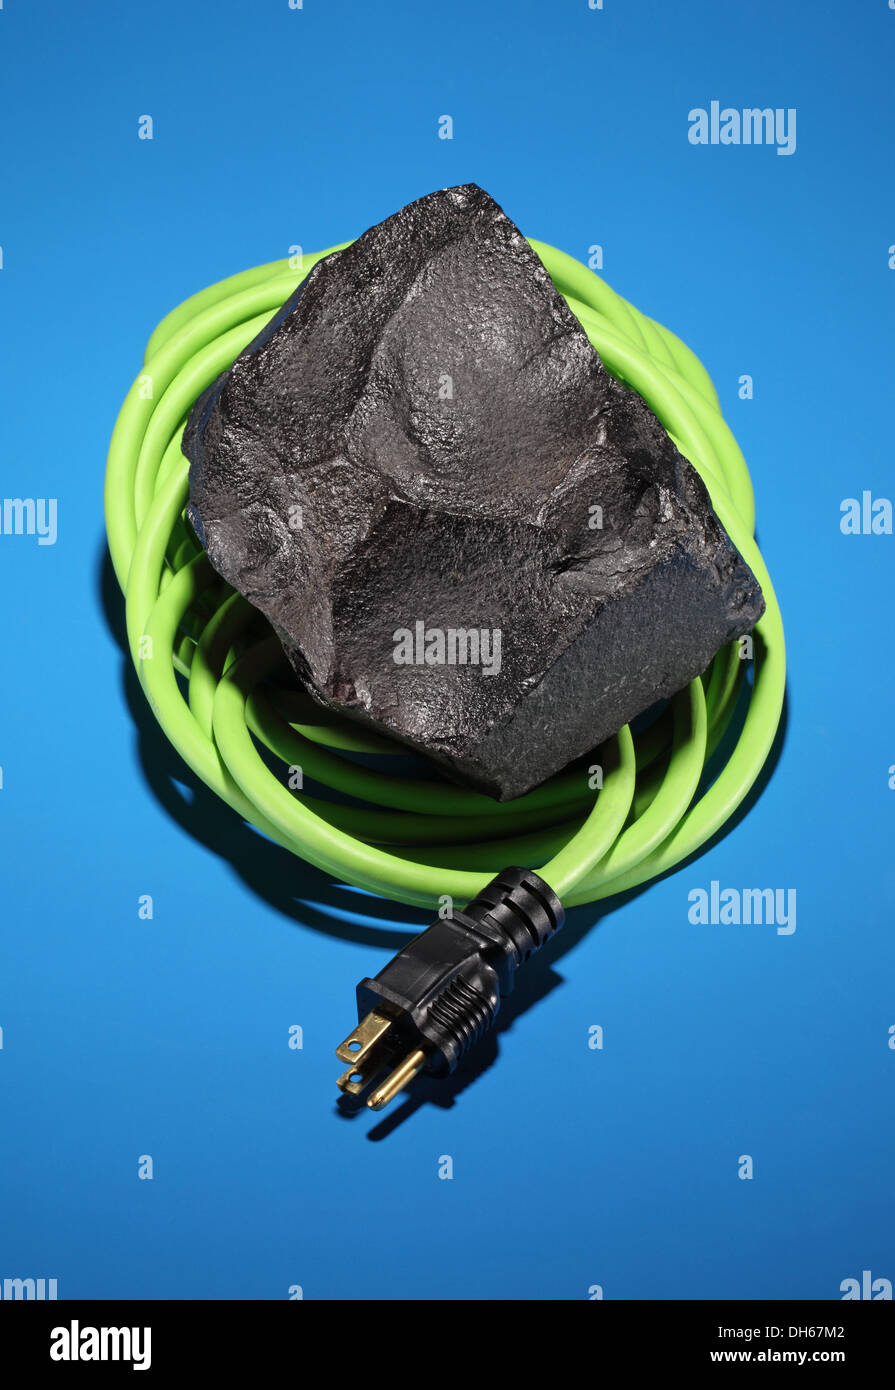 Un morceau de charbon noir entourée d'un cordon électrique et la fiche verte Banque D'Images